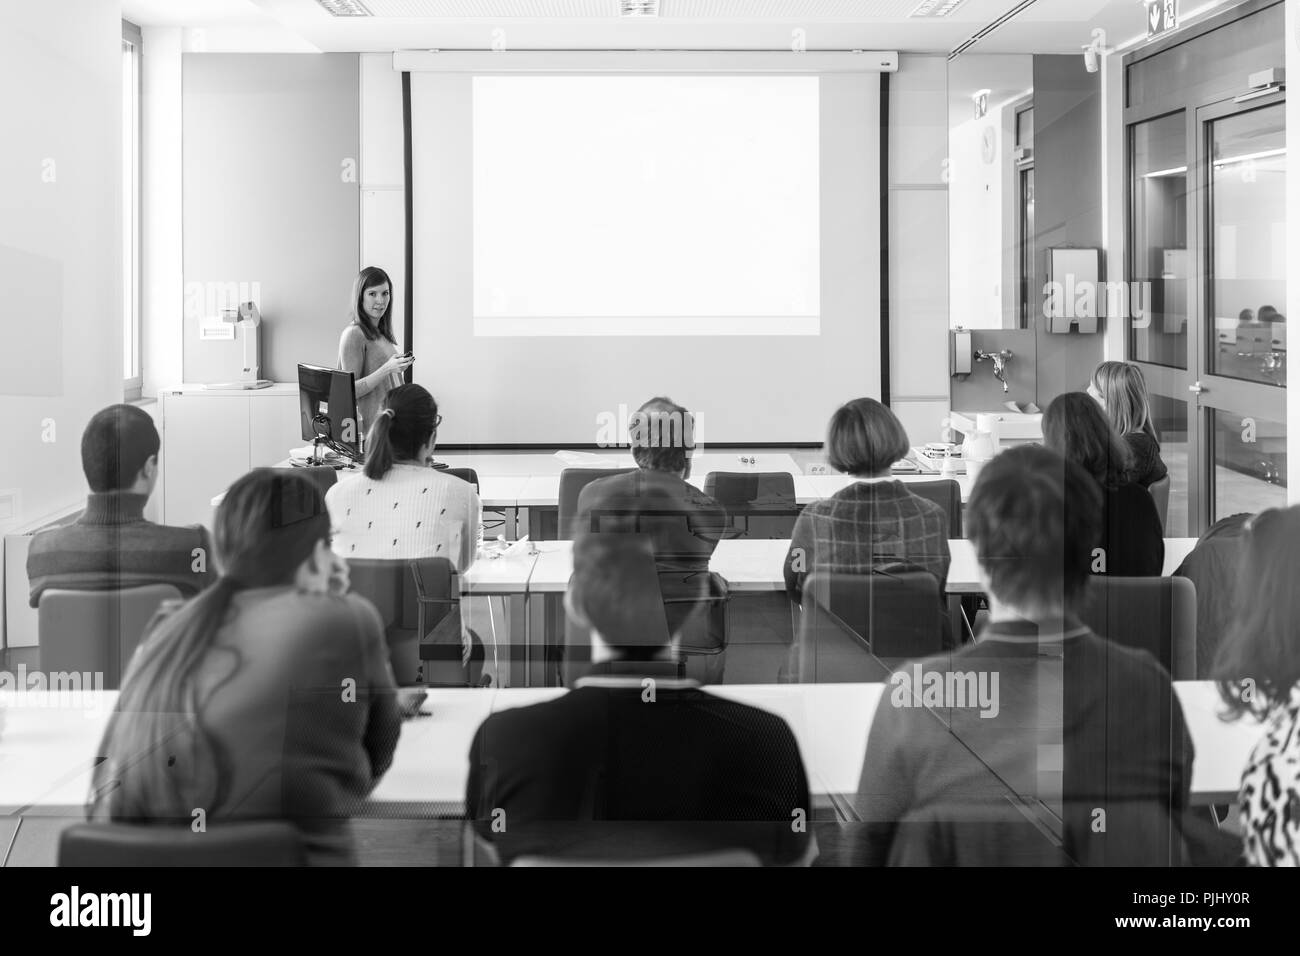 Woman giving presentation in lecture hall à l'université. Banque D'Images